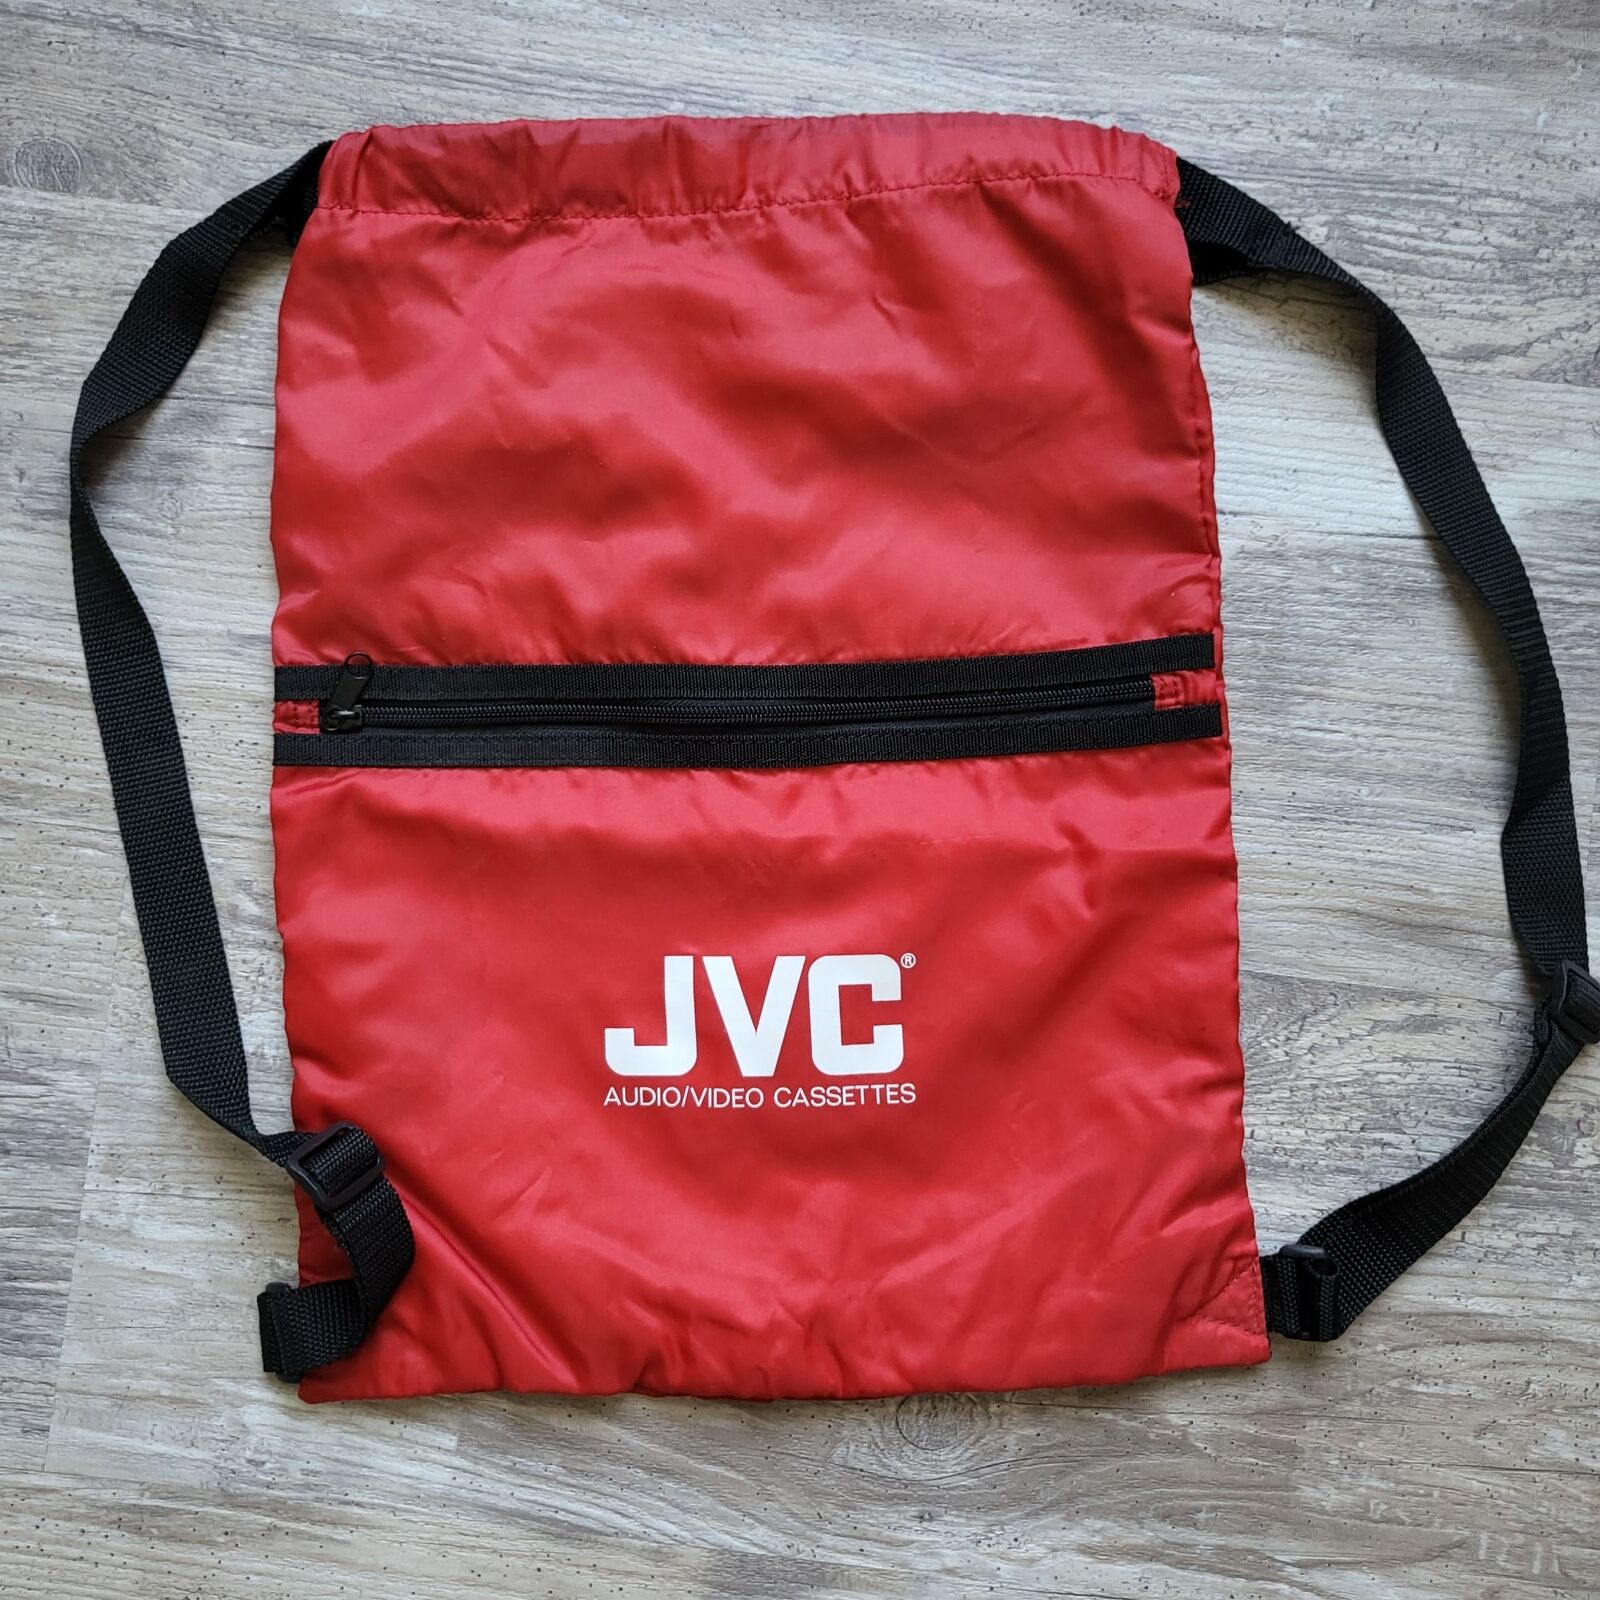 JVC Bag.jpg